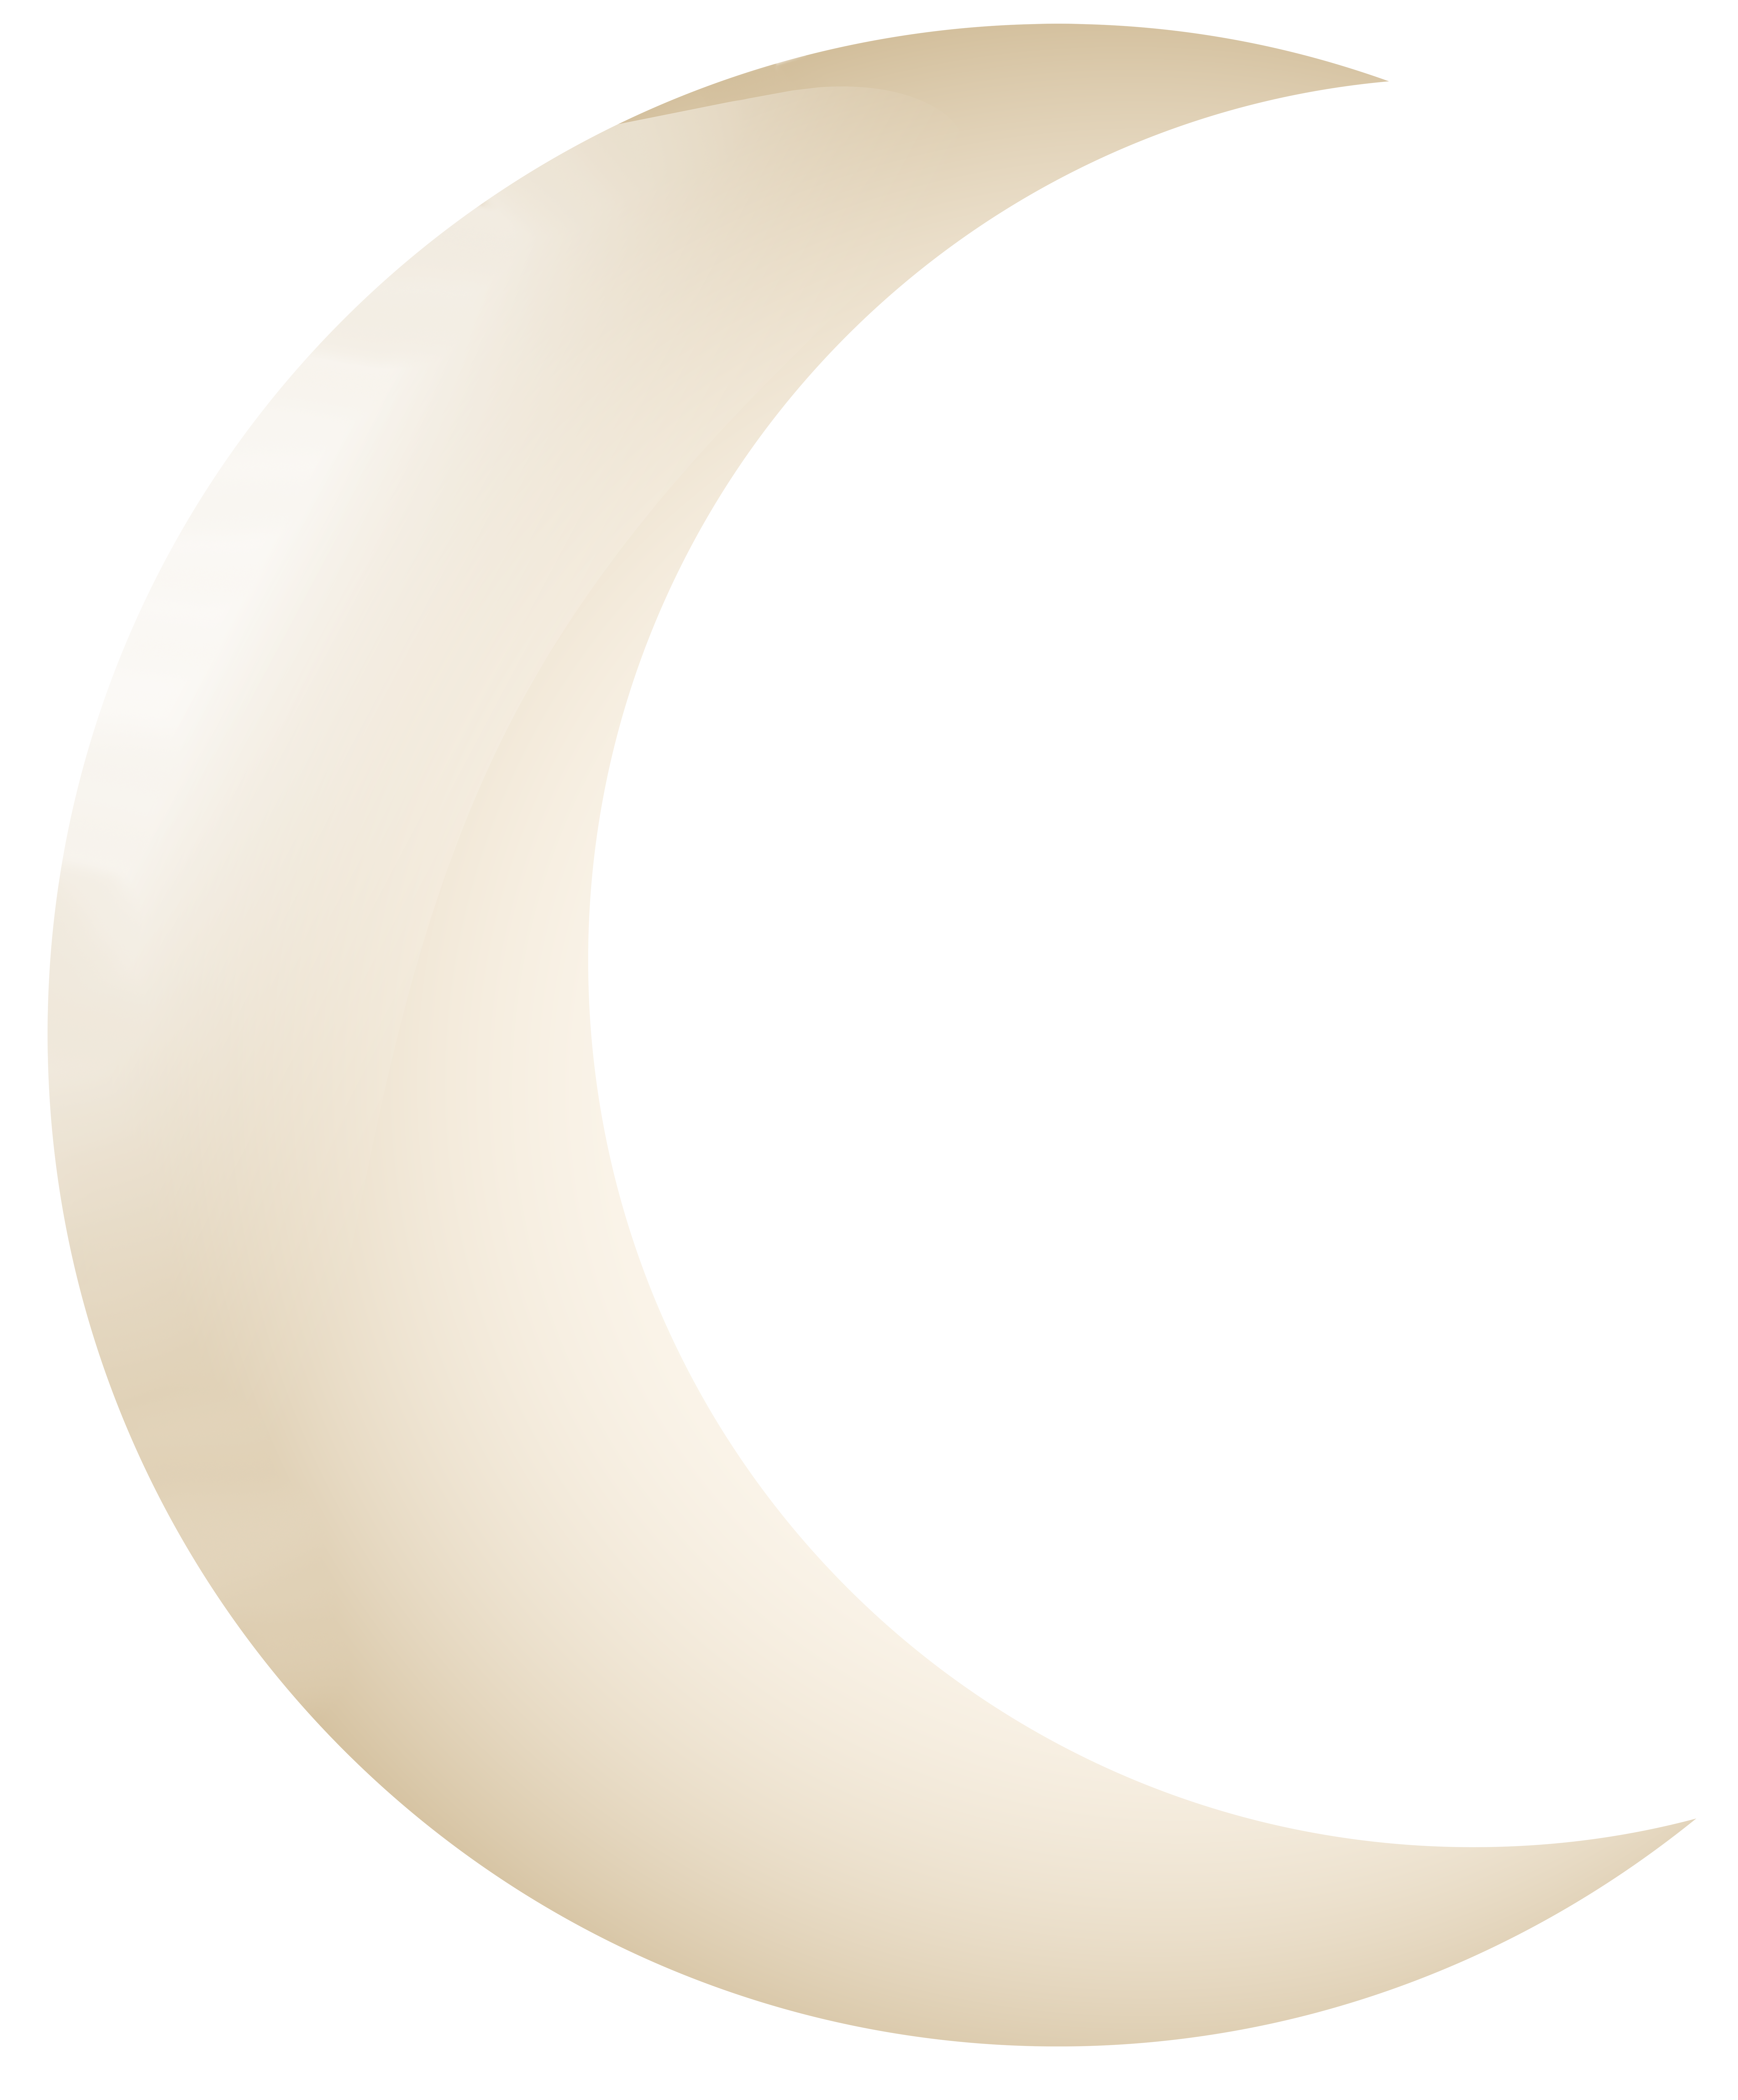 eclipse clipart icon